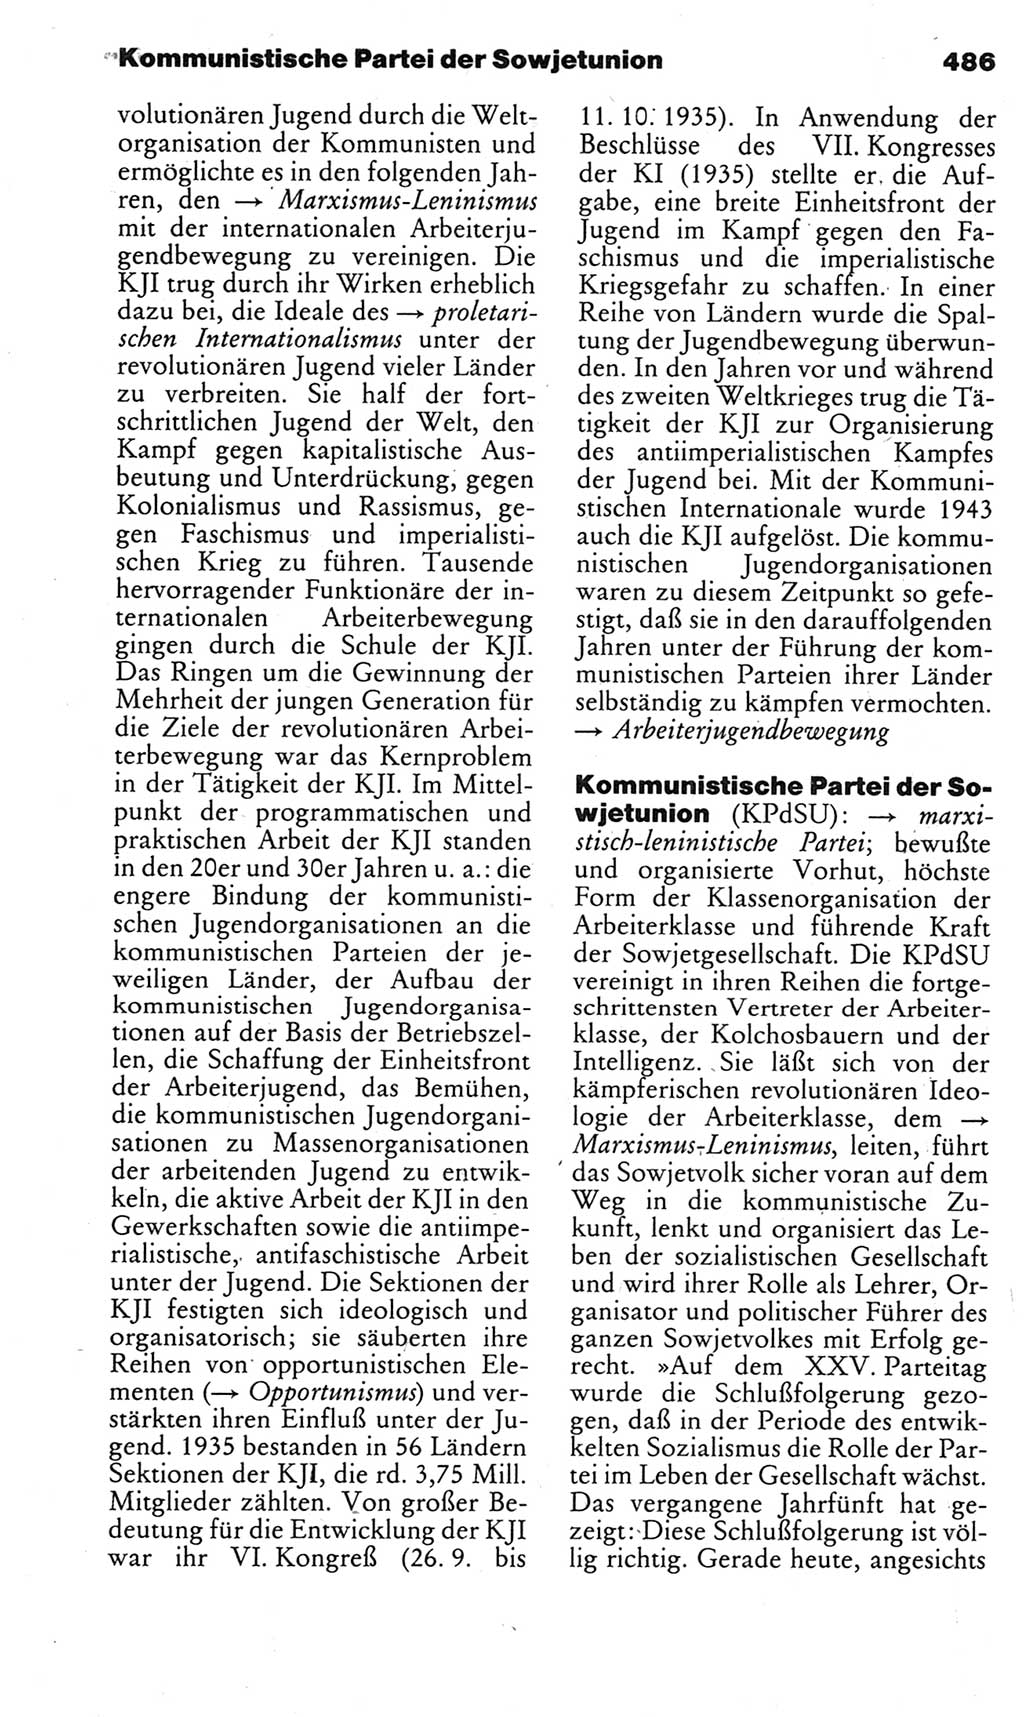 Kleines politisches Wörterbuch [Deutsche Demokratische Republik (DDR)] 1983, Seite 486 (Kl. pol. Wb. DDR 1983, S. 486)